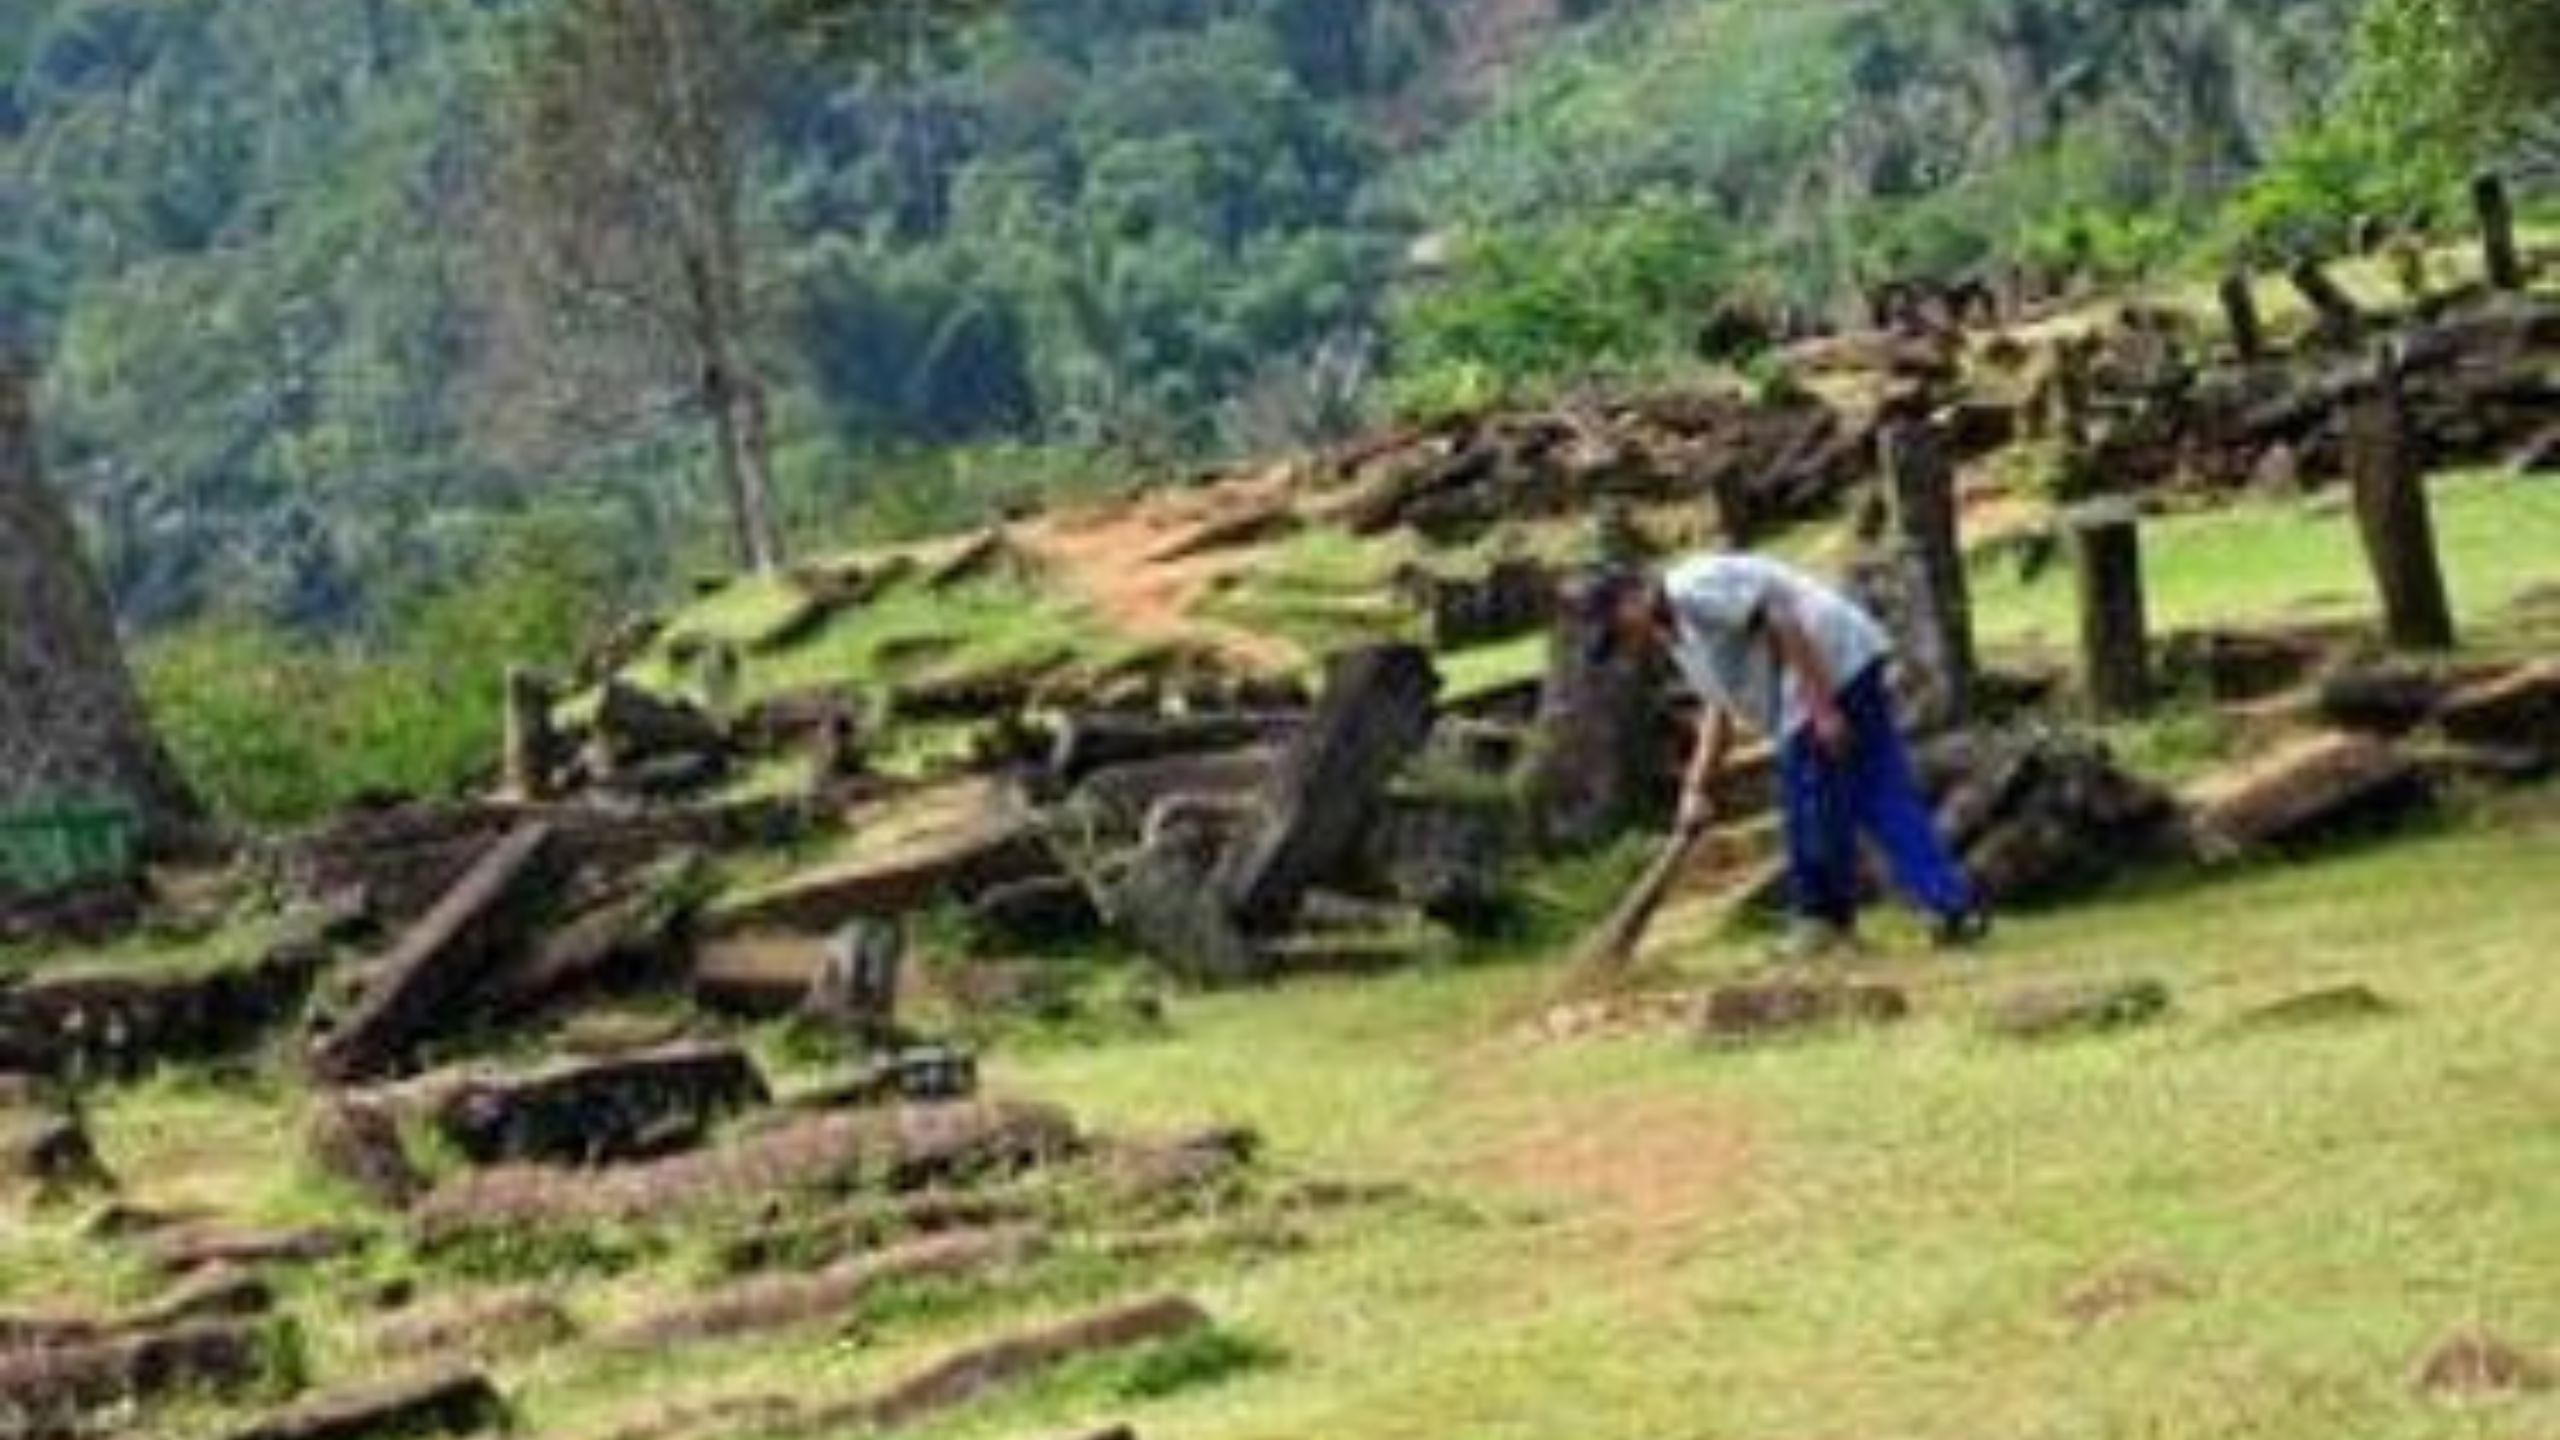 Rahasia 5 Makam Kuno Terungkap di Situs Gunung Padang, Baru Dua Terbaca, Satu Belum Jelas, Lebih Tua Dari Maka